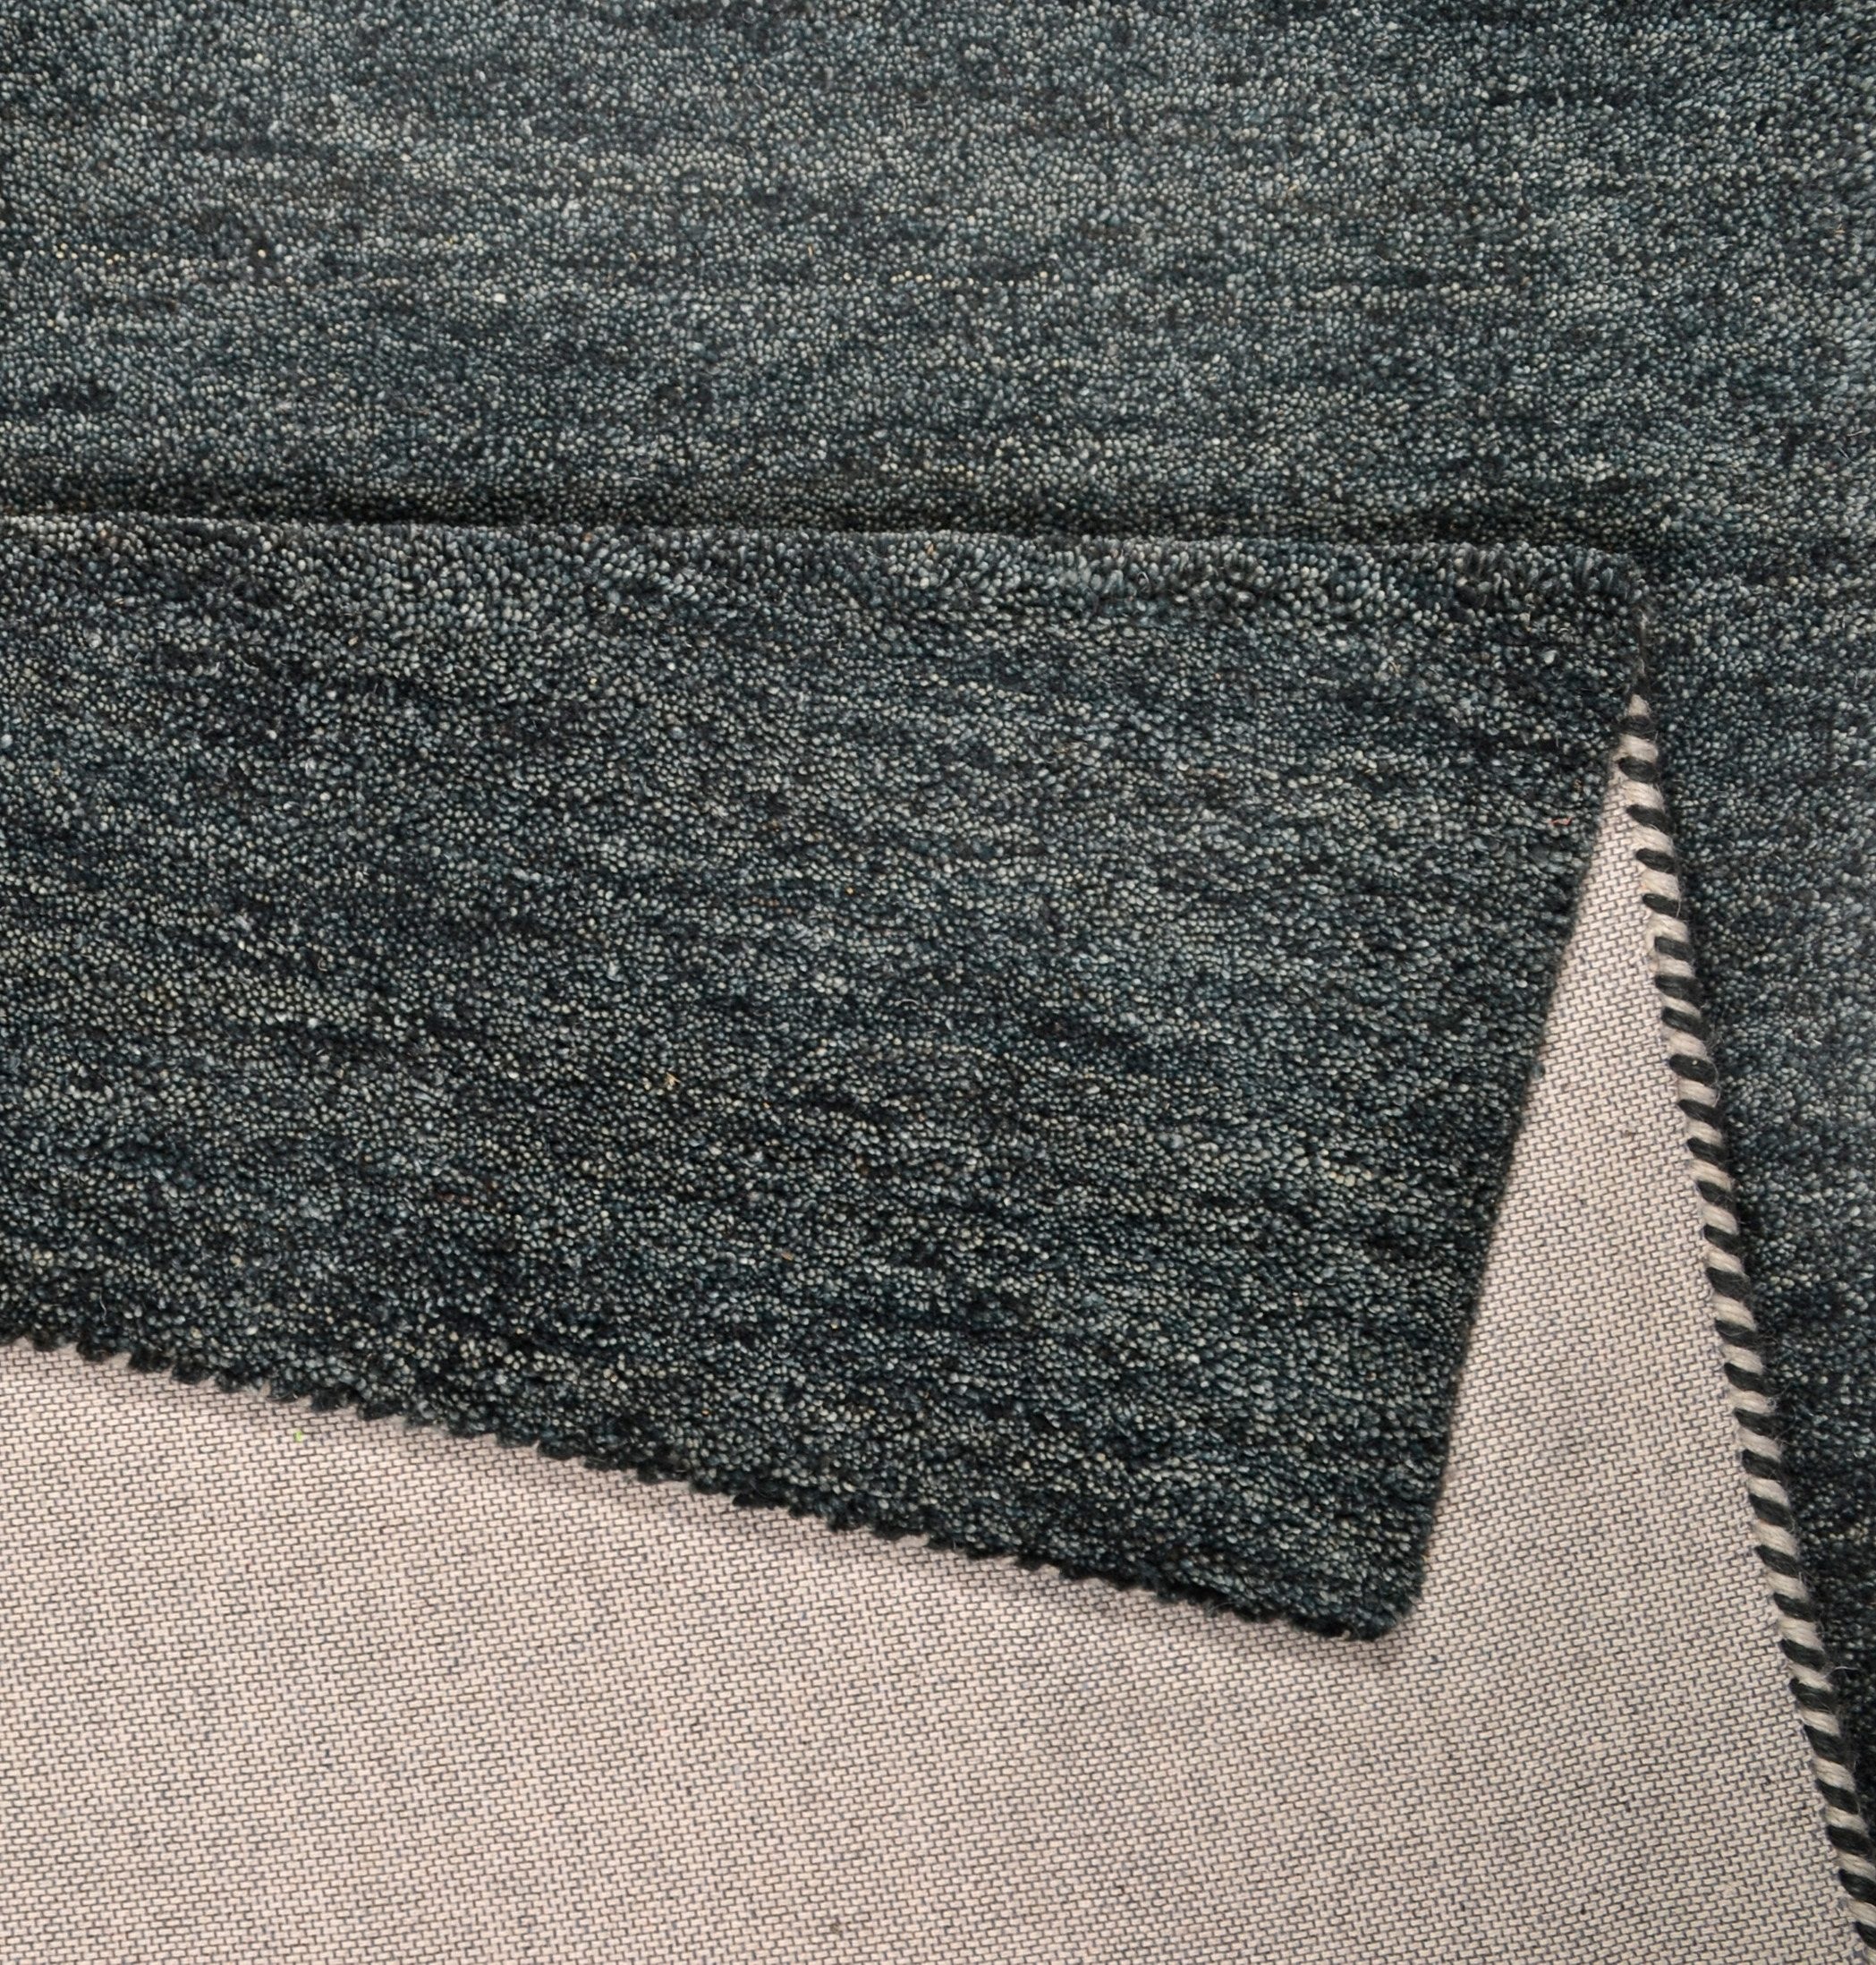 THEKO Wollteppich »Haltu Uni«, rechteckig, Handweb Teppich, reine Wolle, Uni-Farben, meliert, handgewebt